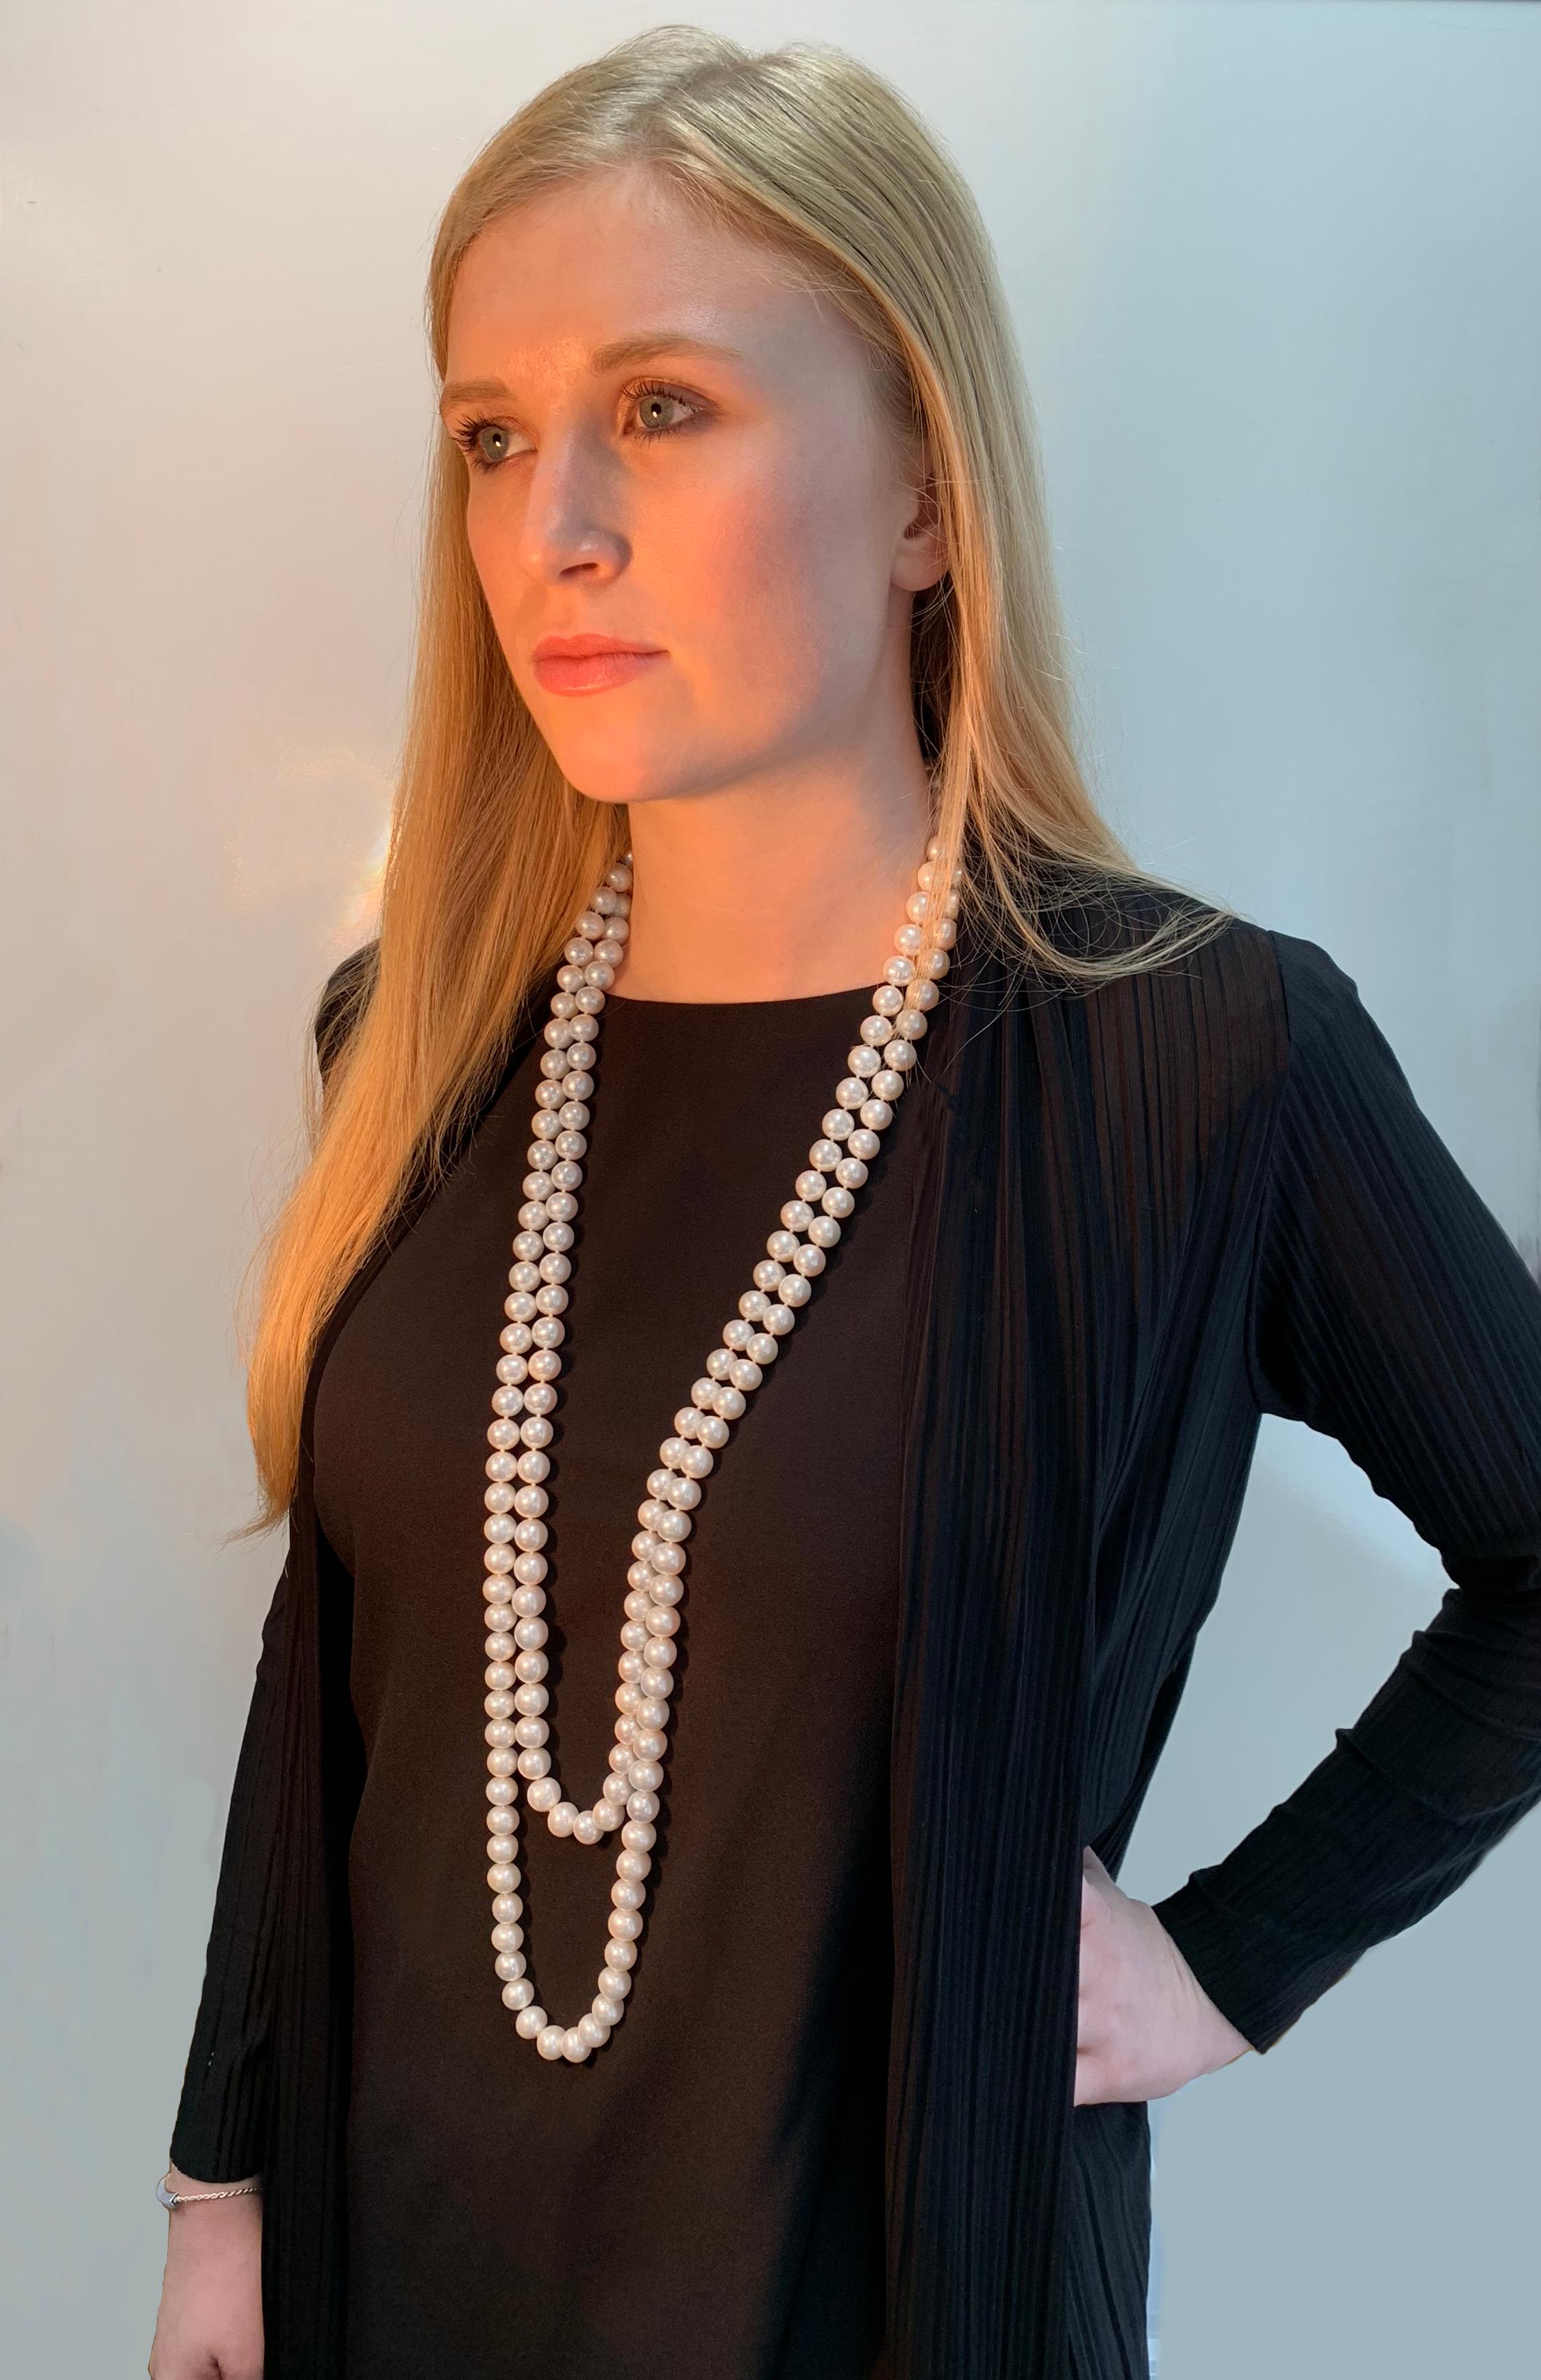 Diese elegante Halskette von Yoko London besteht aus zwei Metern glänzender Süßwasserperlen, die von Experten in unserem Londoner Atelier nach Größe, Glanz und Form ausgewählt wurden, um ein nahtloses und elegantes Aussehen zu gewährleisten. Das